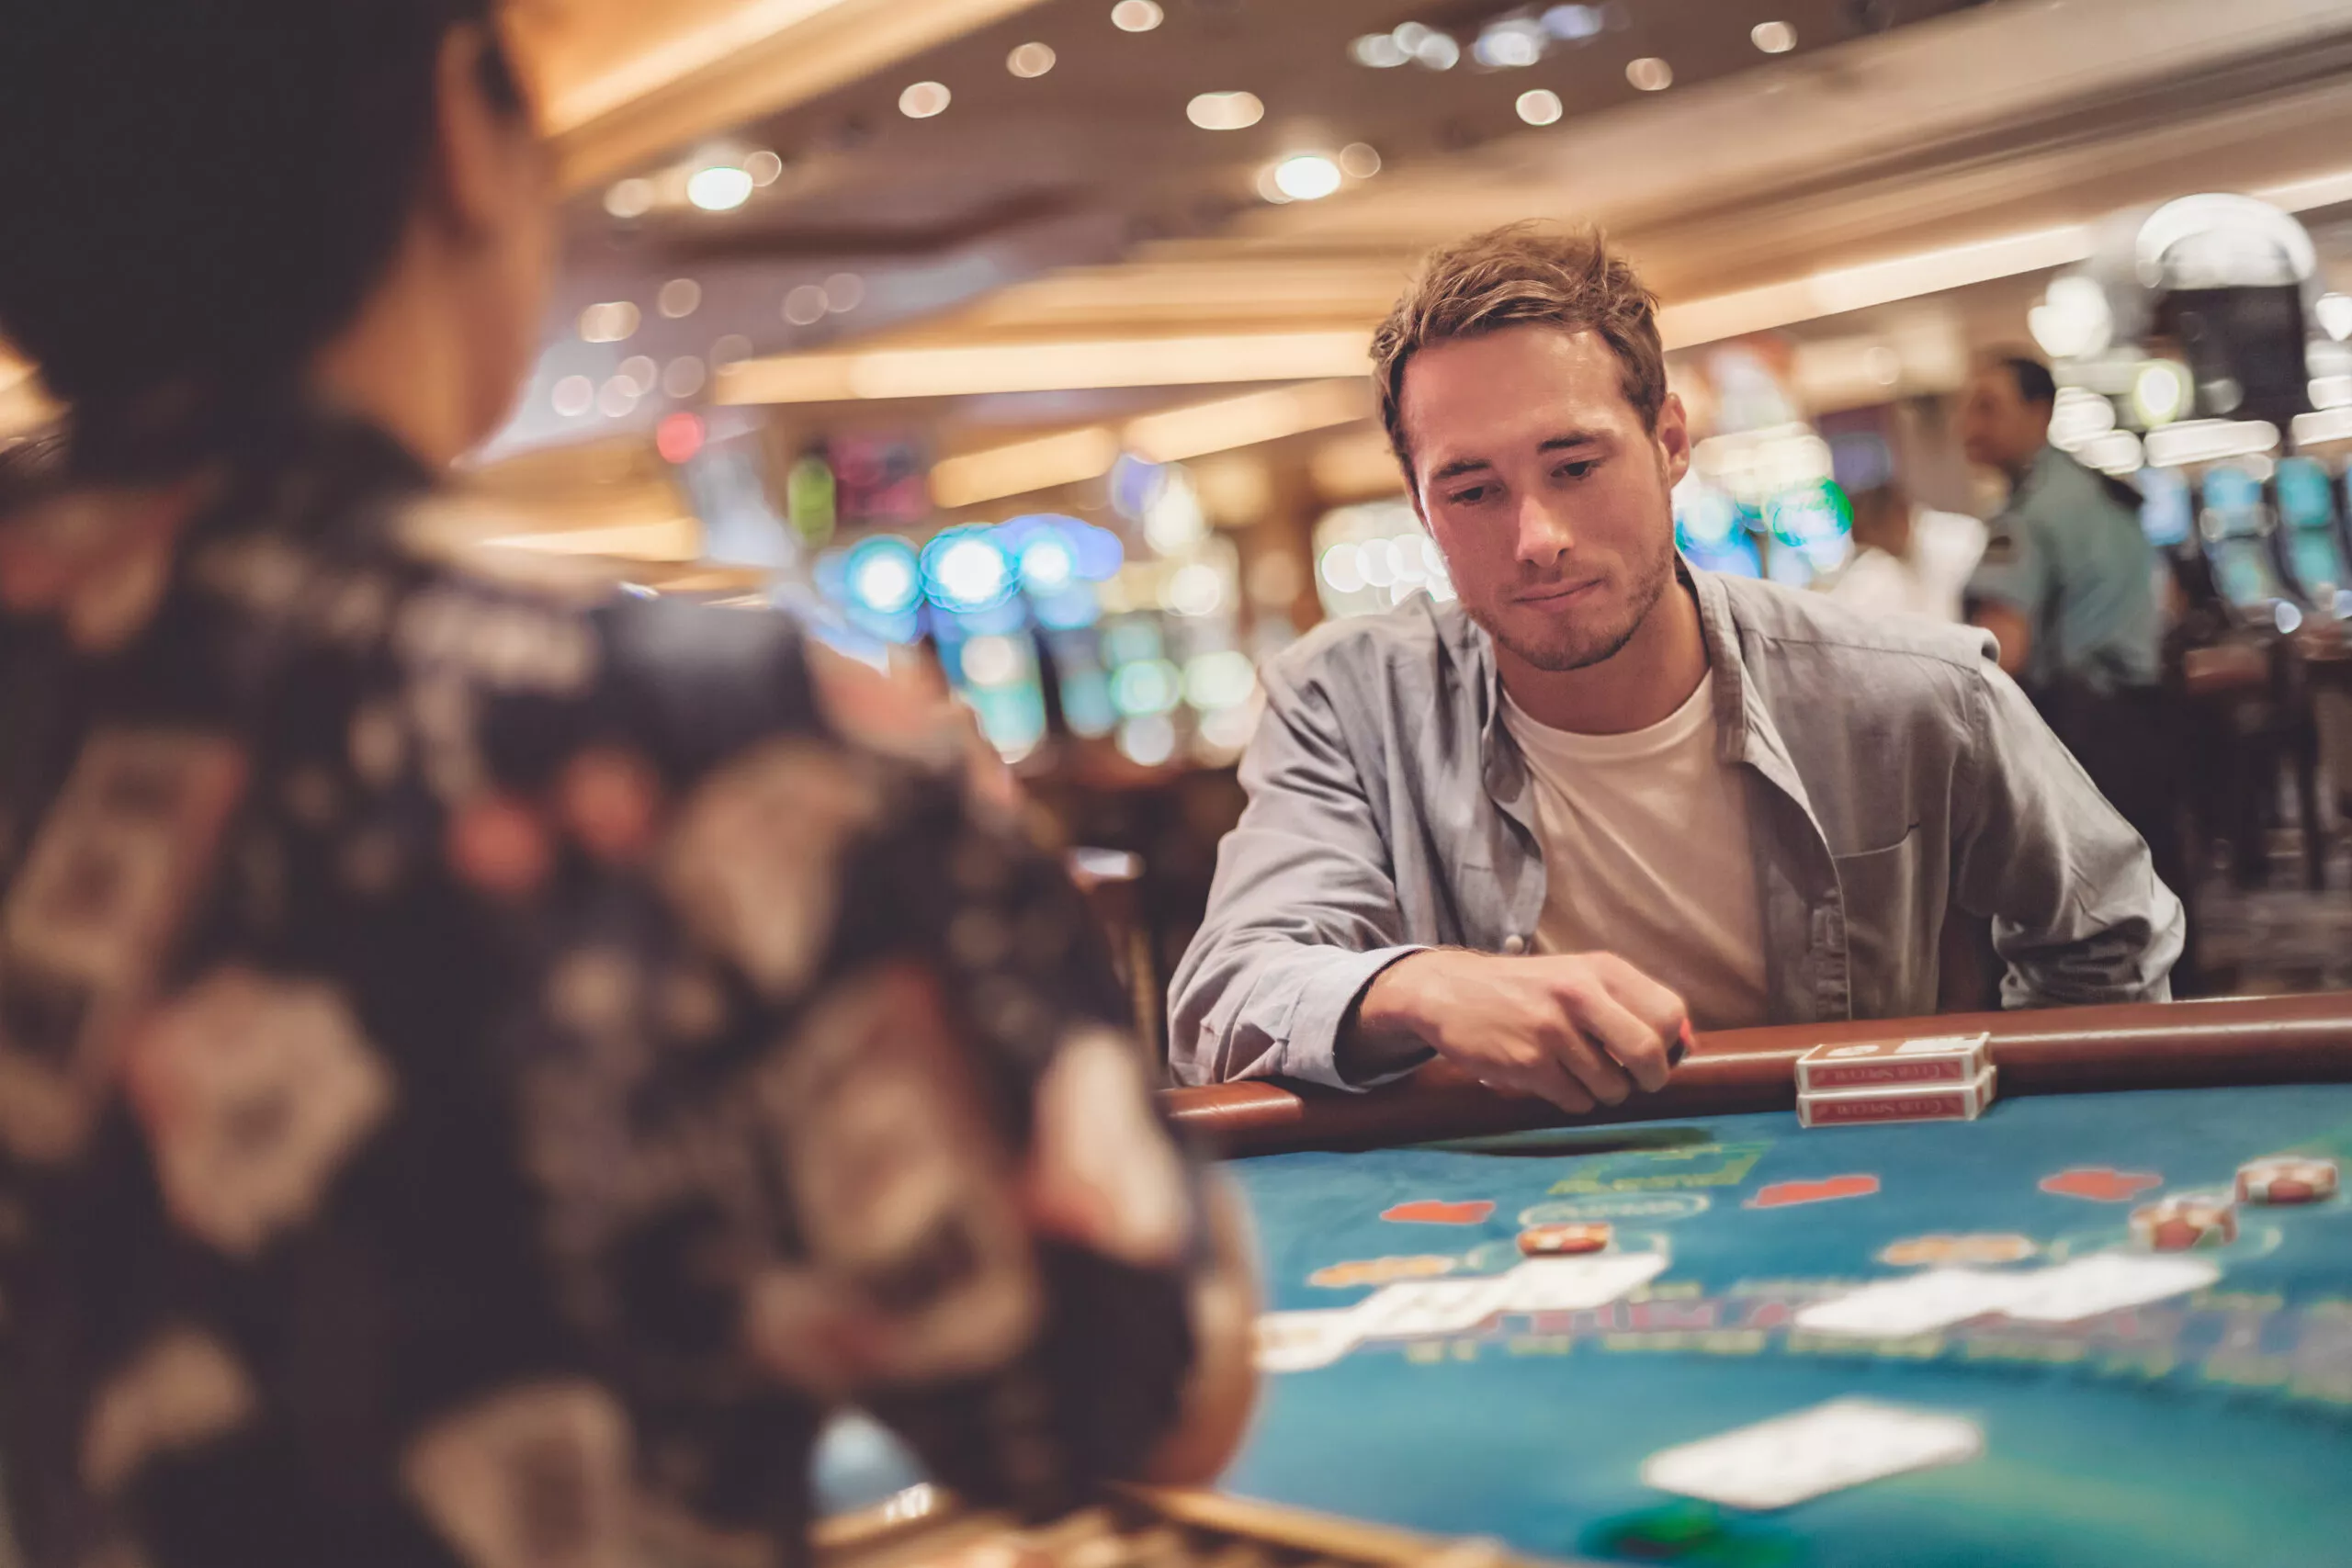 Jeune homme jouant au blackjack à une table de casino avec des cartes et des jetons. Portrait d'intérieur d'un joueur avec un croupier.